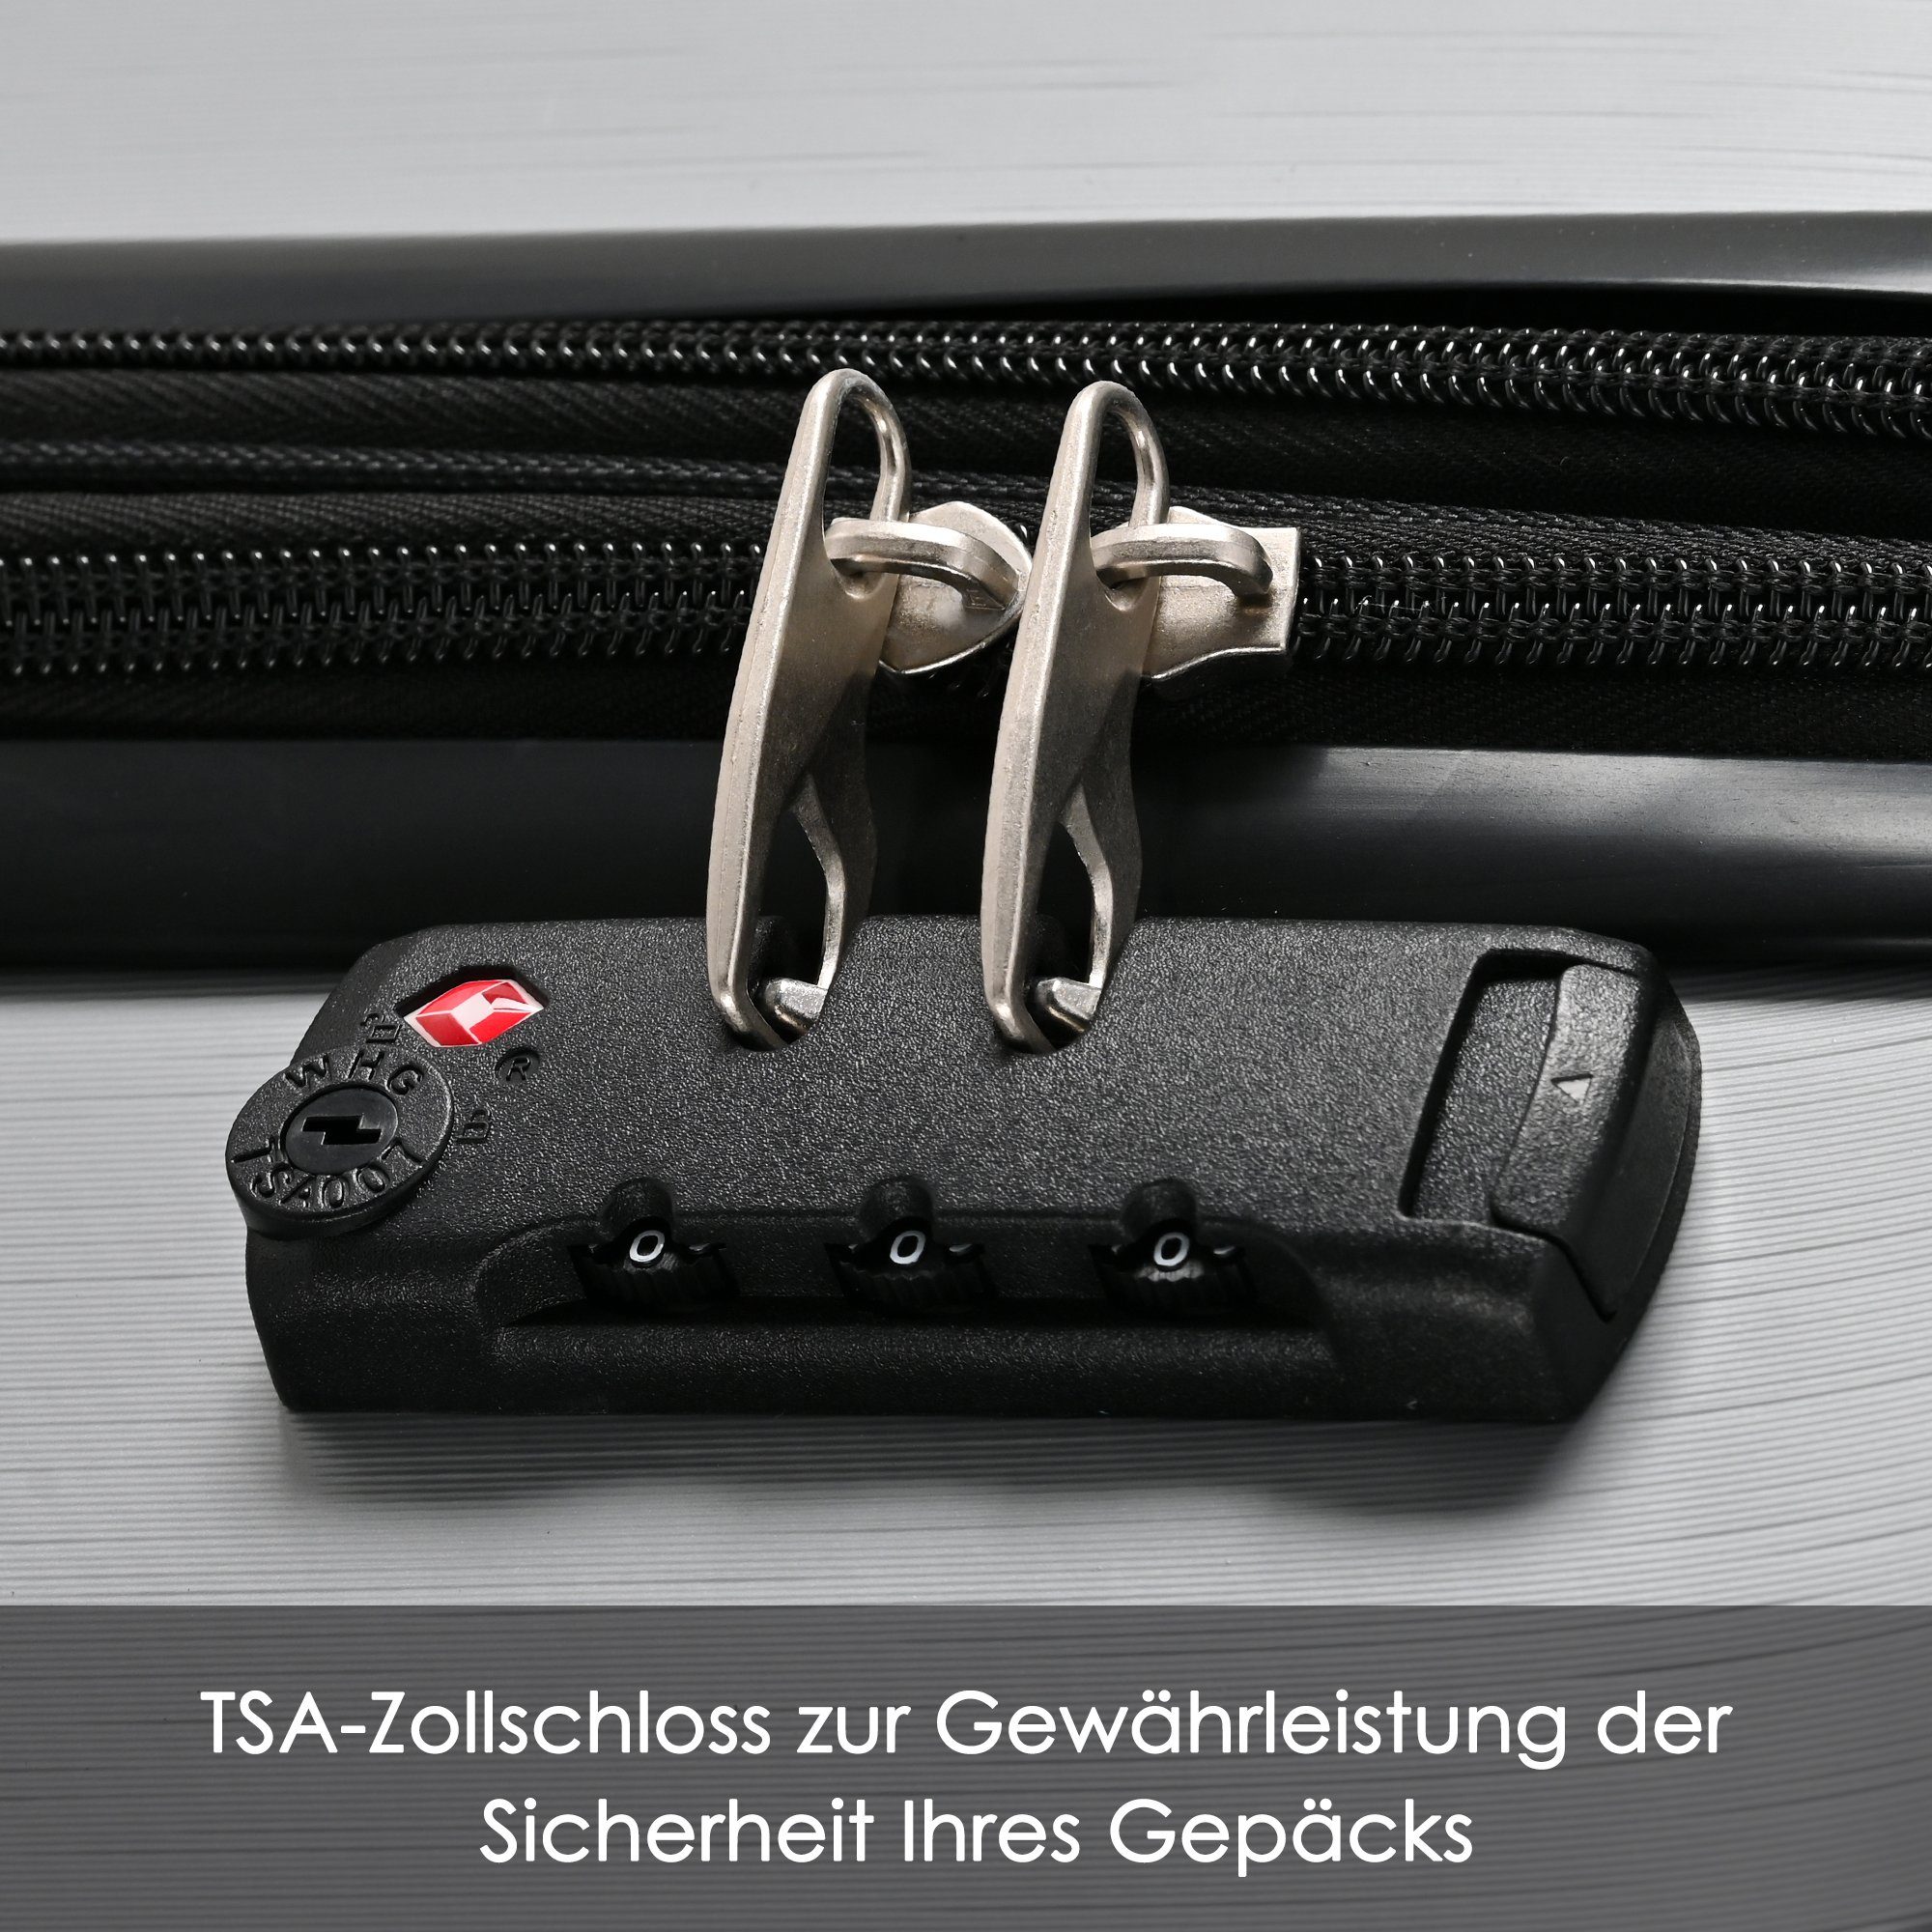 Grau Ulife 4 ABS-Material, Reisekoffer Rollen, Handgepäck-Trolley TSA Zollschloss, M-Größe:56.5*37.5*22.5